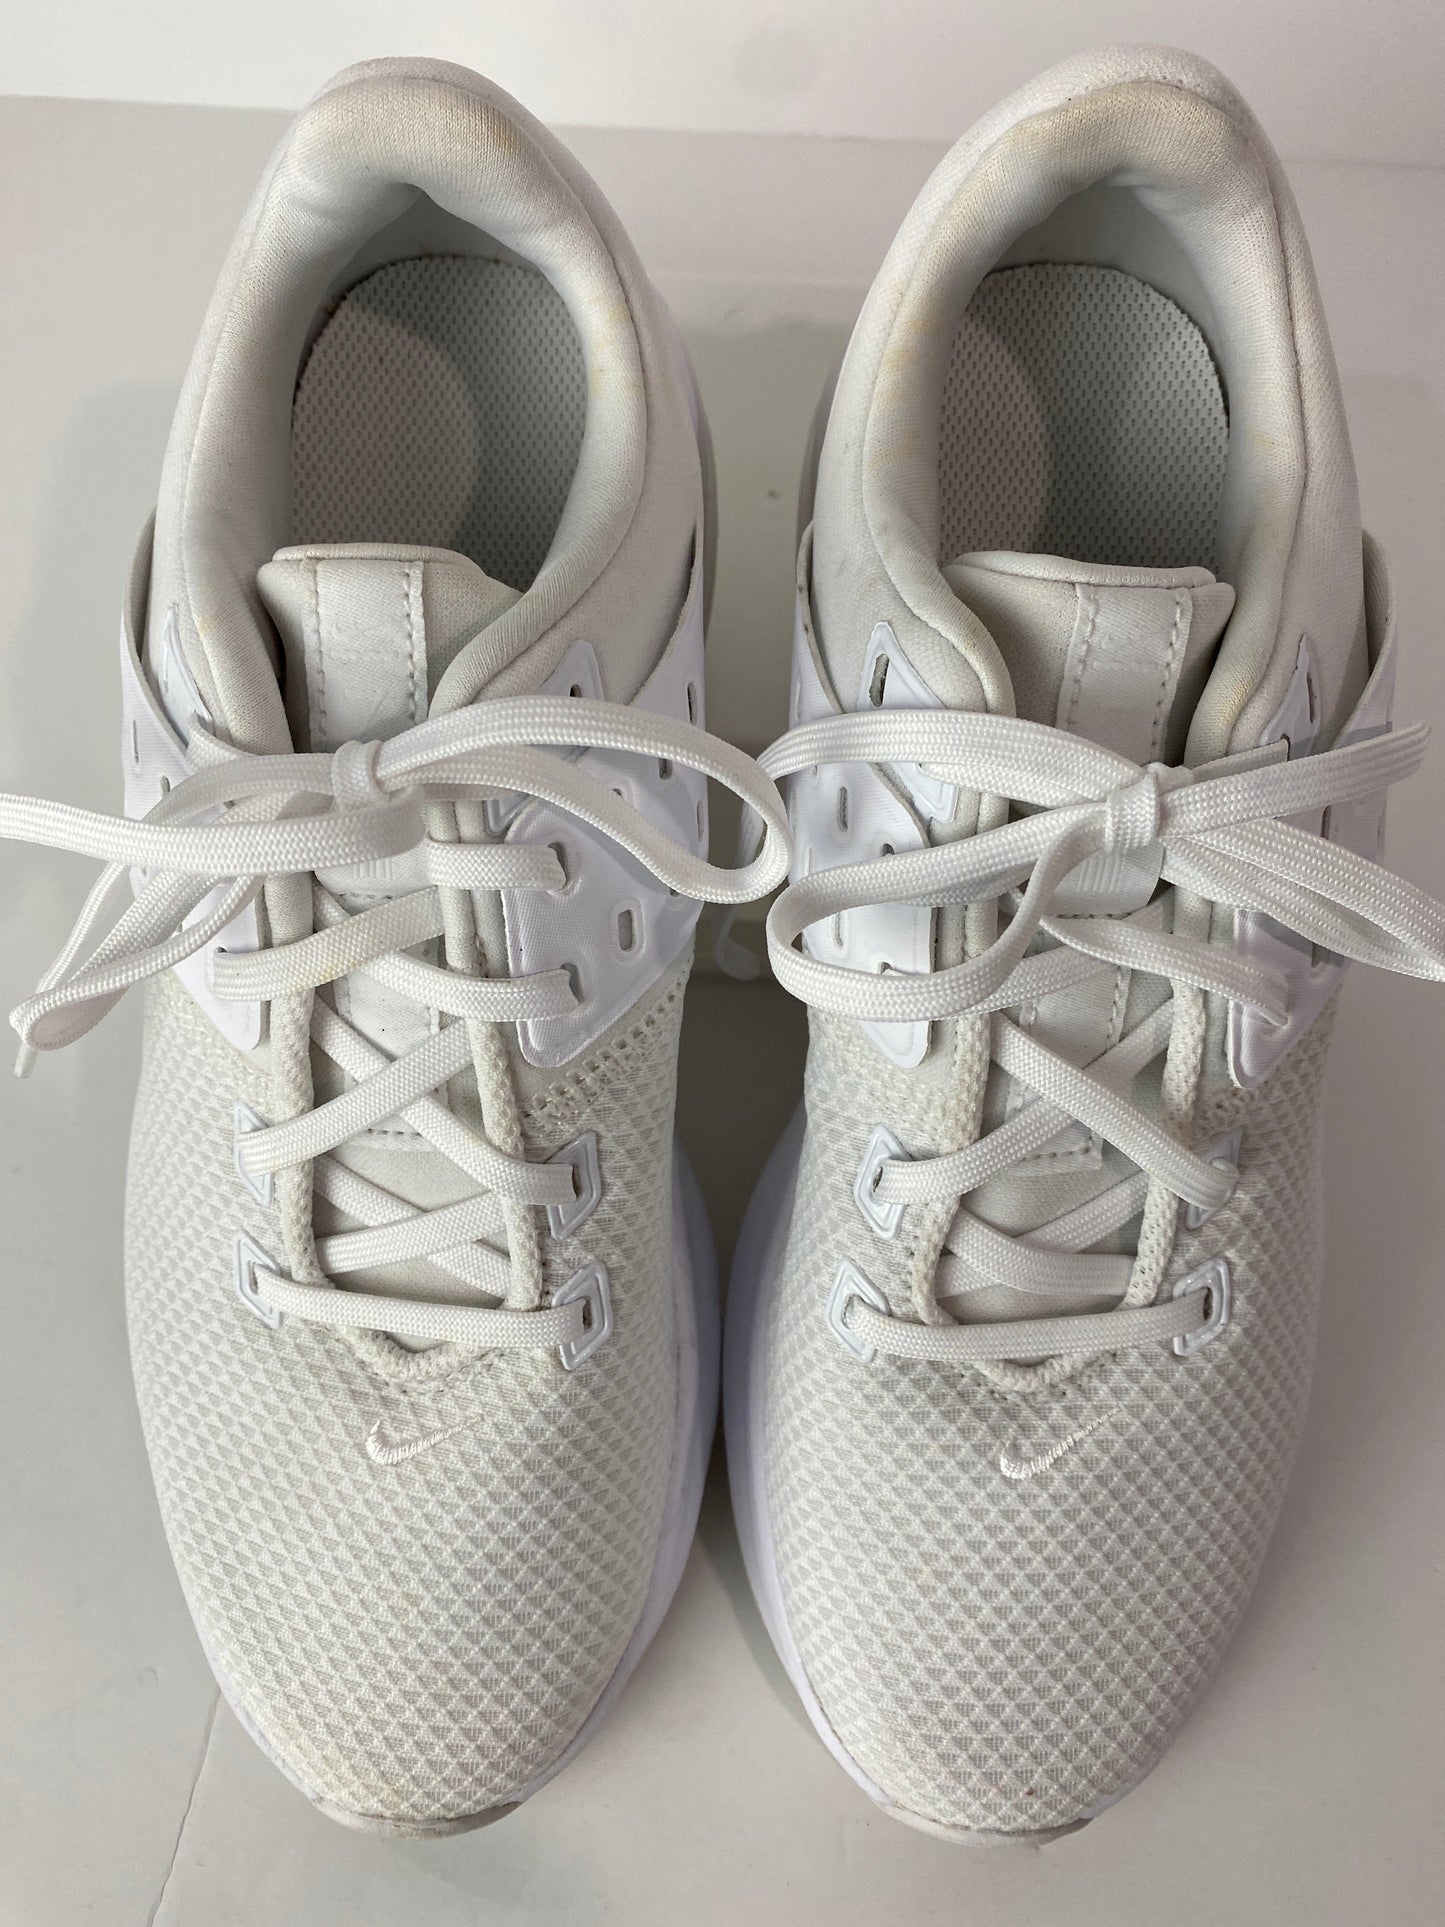 White Shoes Athletic Nike, Size 8